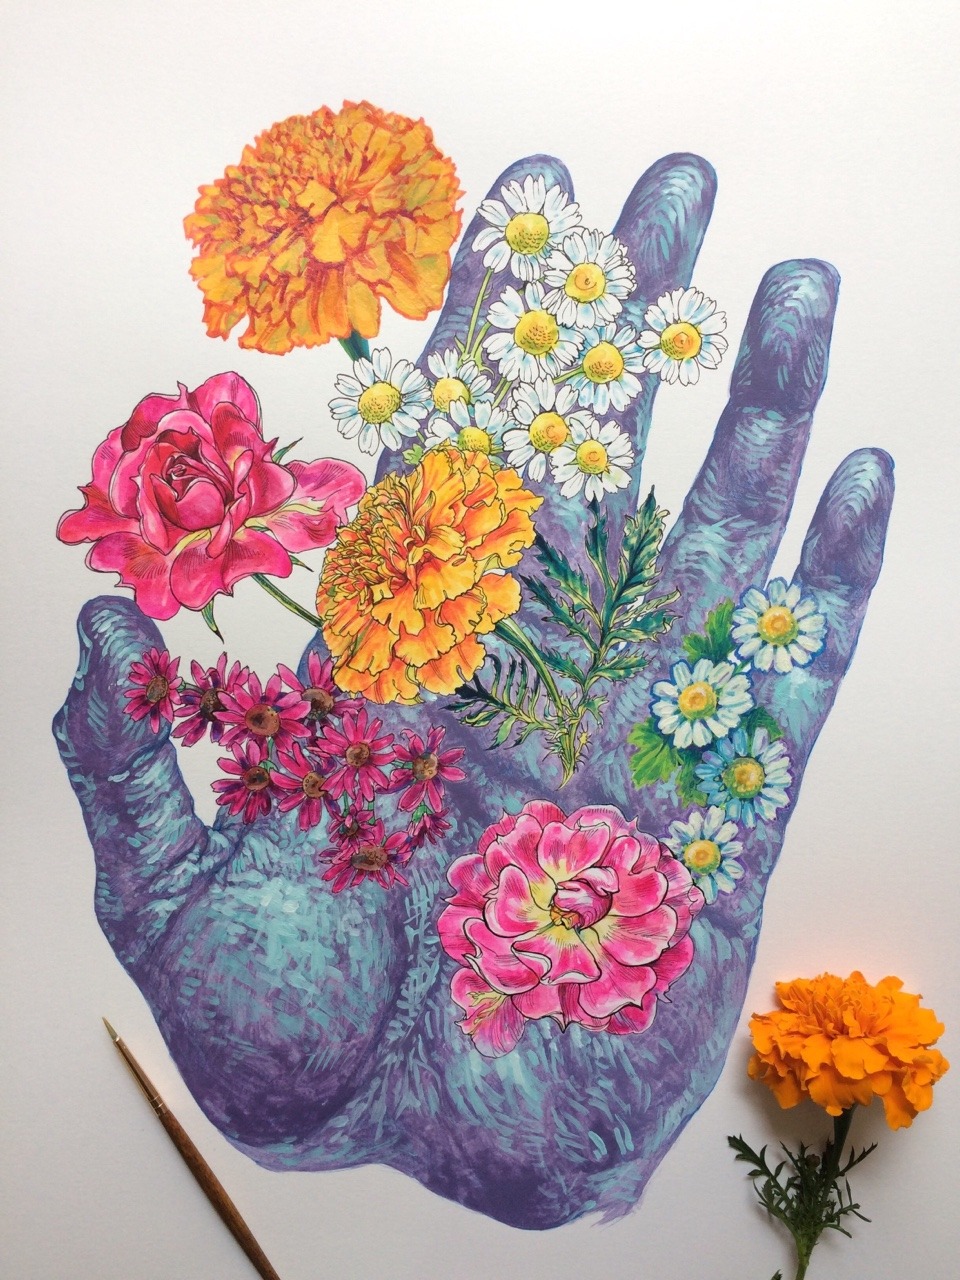 Blumen und Hände in der Kunst von Noel Badget Pugh